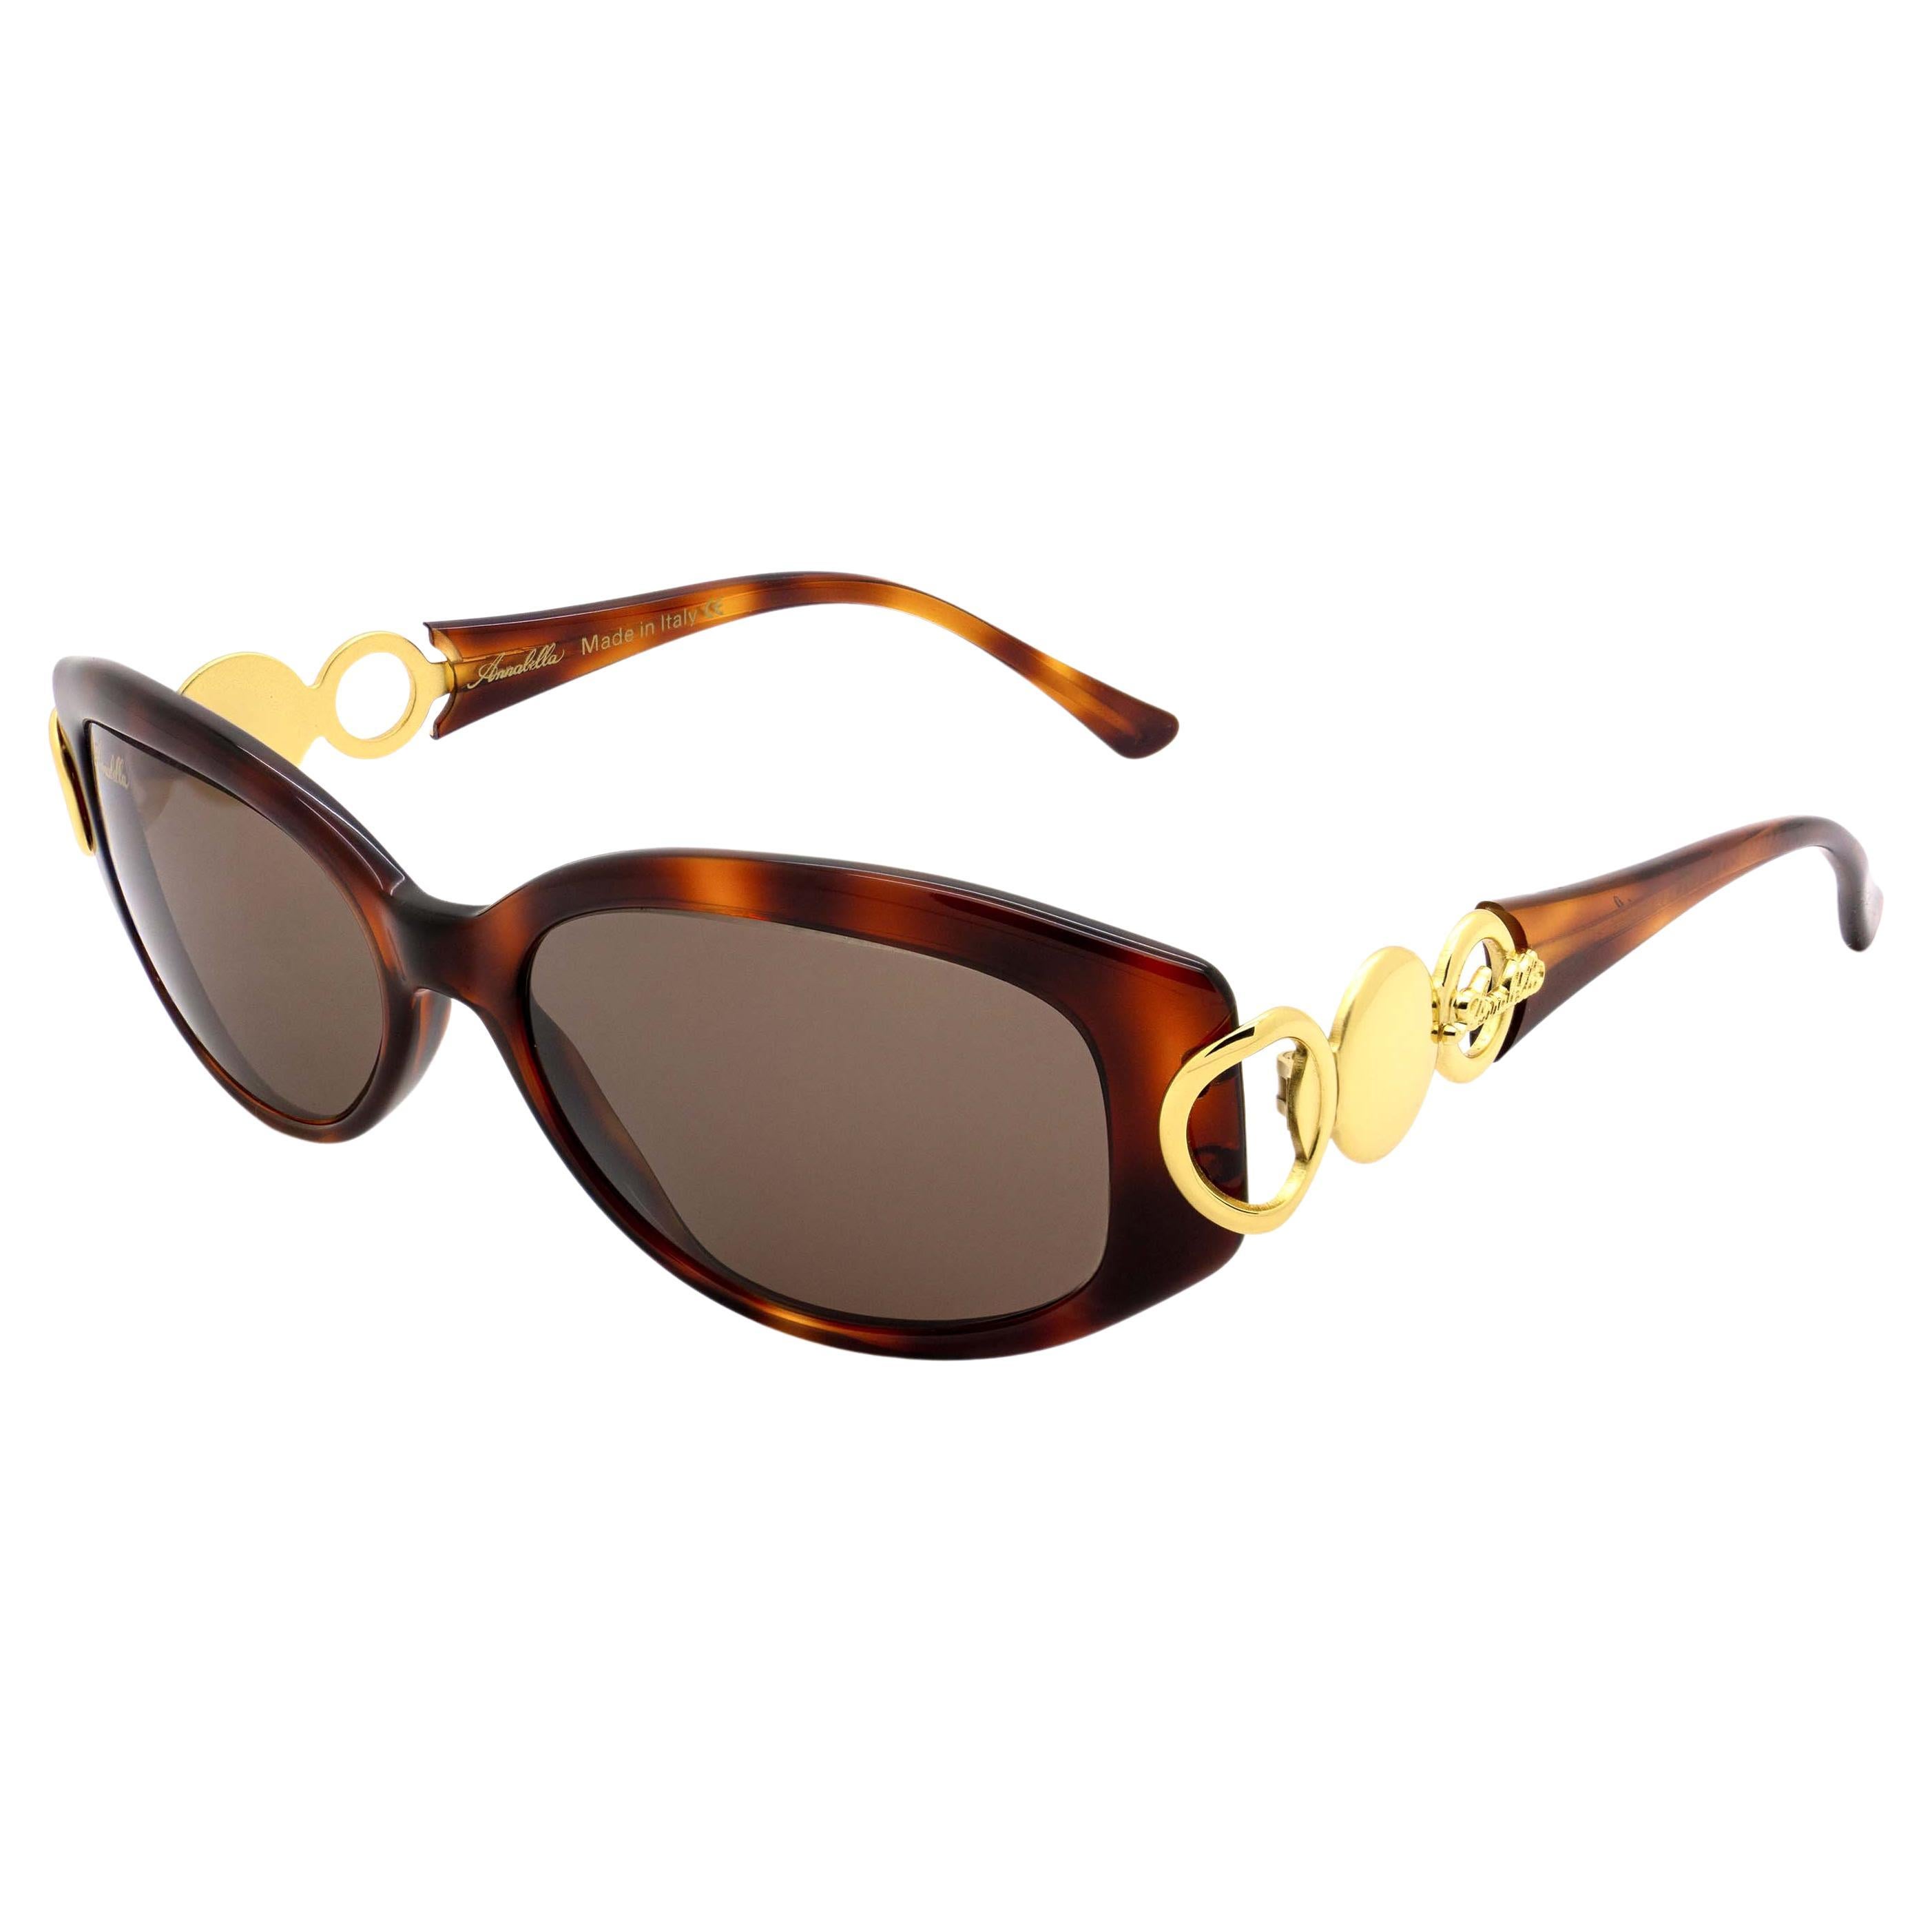 Simonetta Ravizza by Annabella vintage sunglasses For Sale